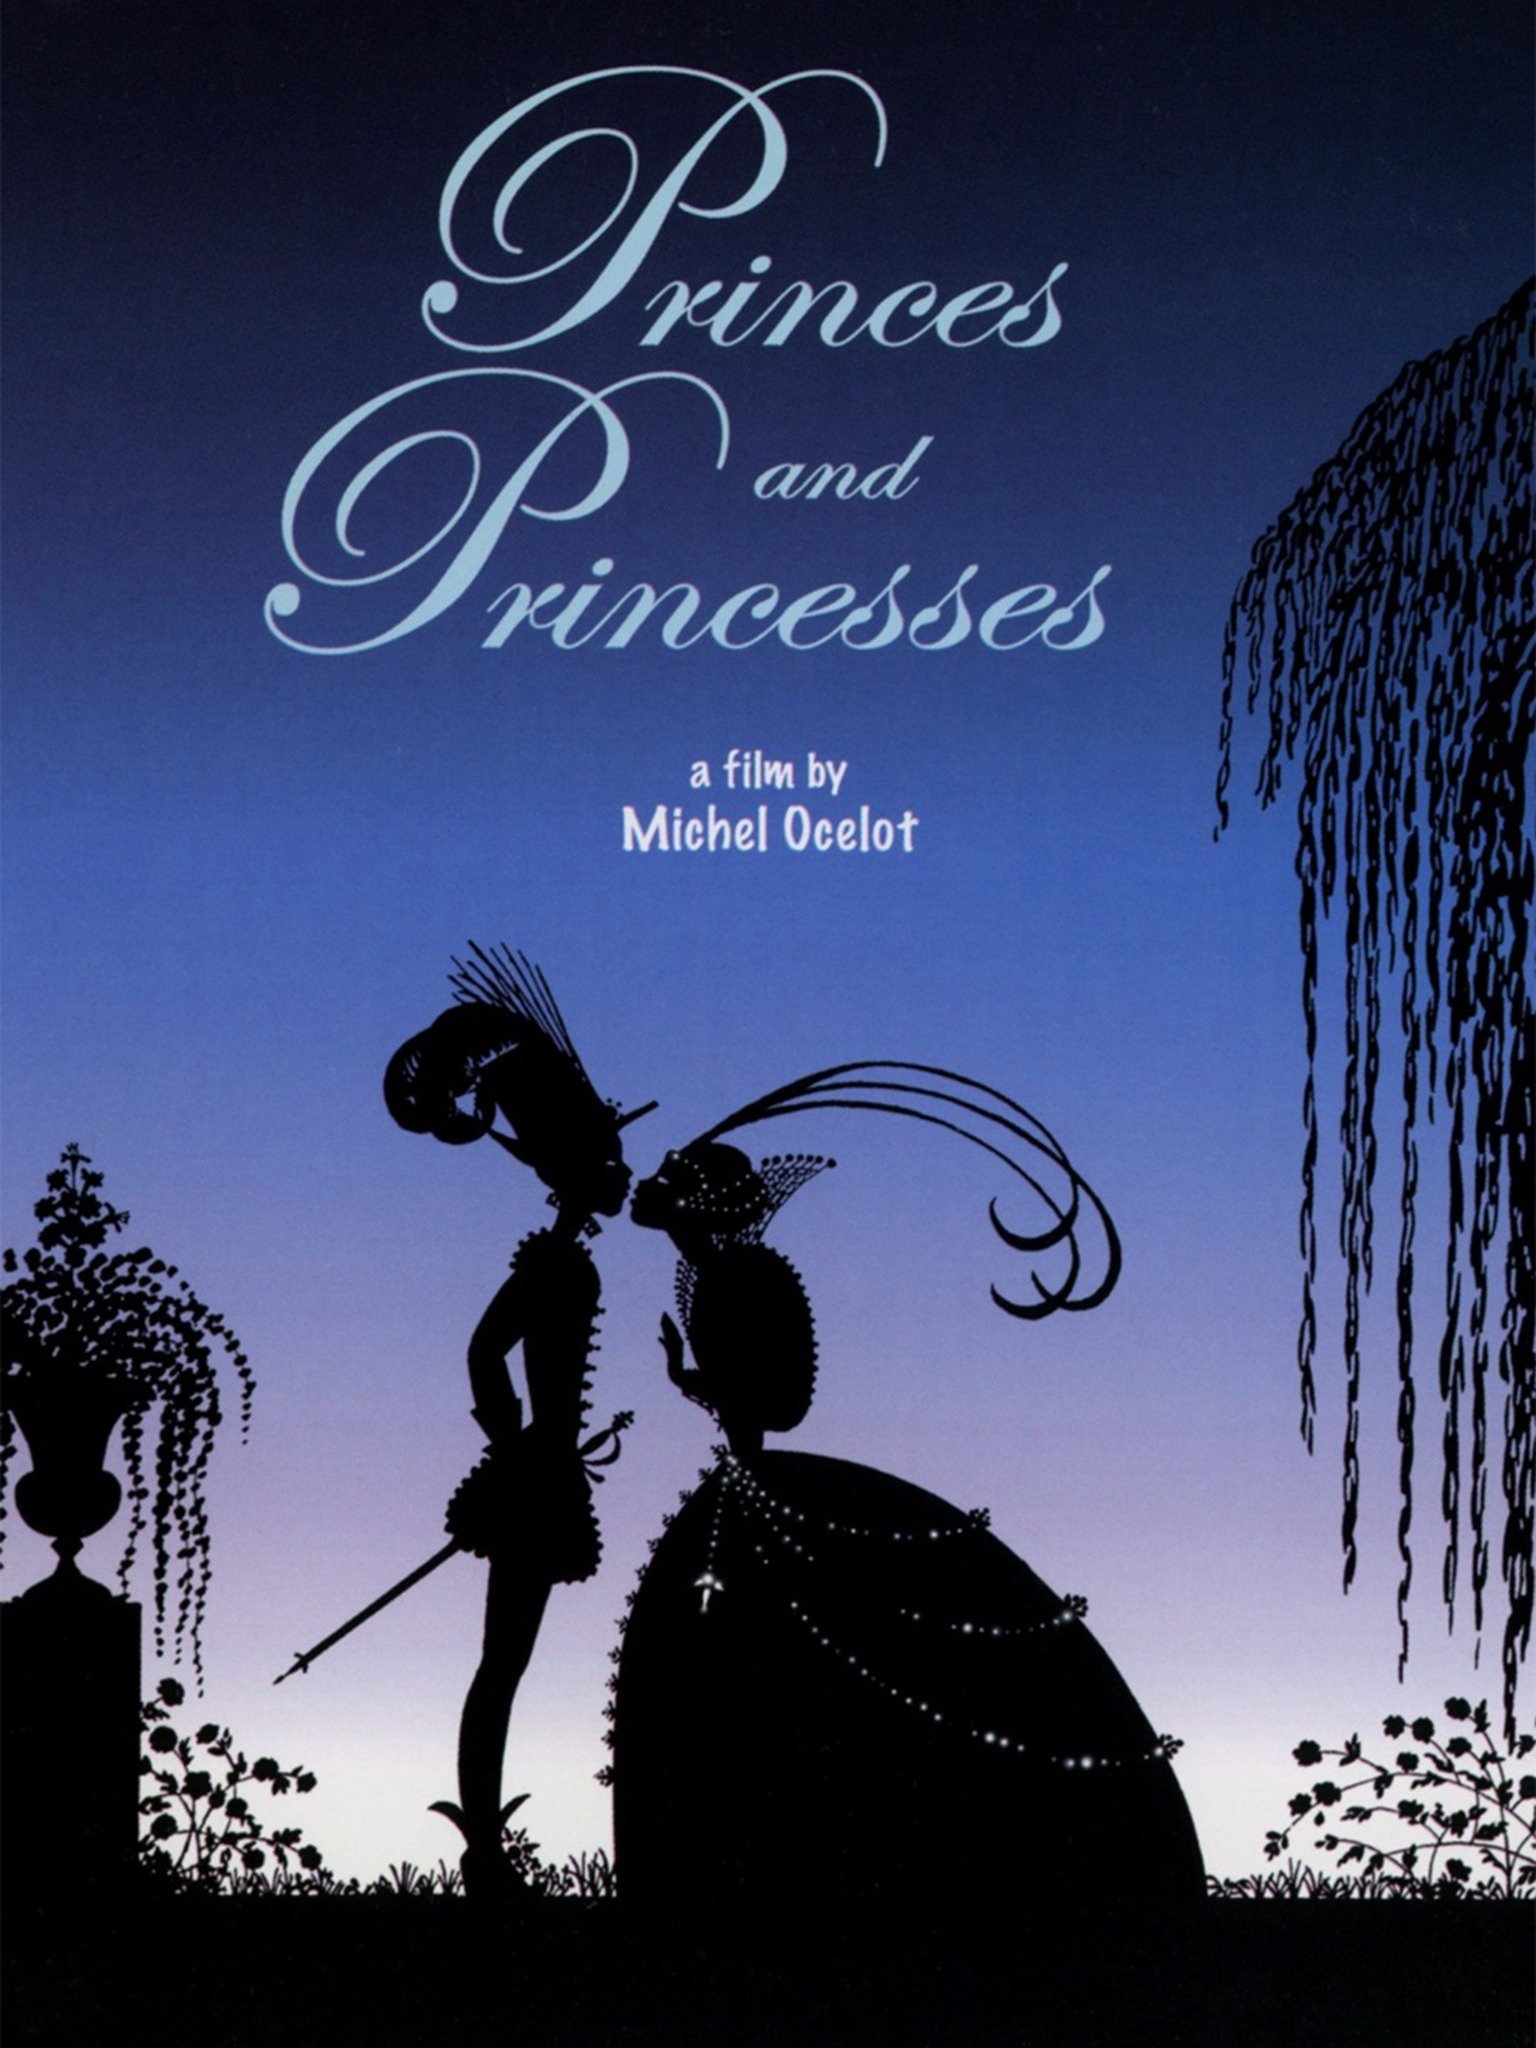 ดูหนังออนไลน์ฟรี Princes Et Princesses (2000) เจ้าชายและเจ้าหญิง